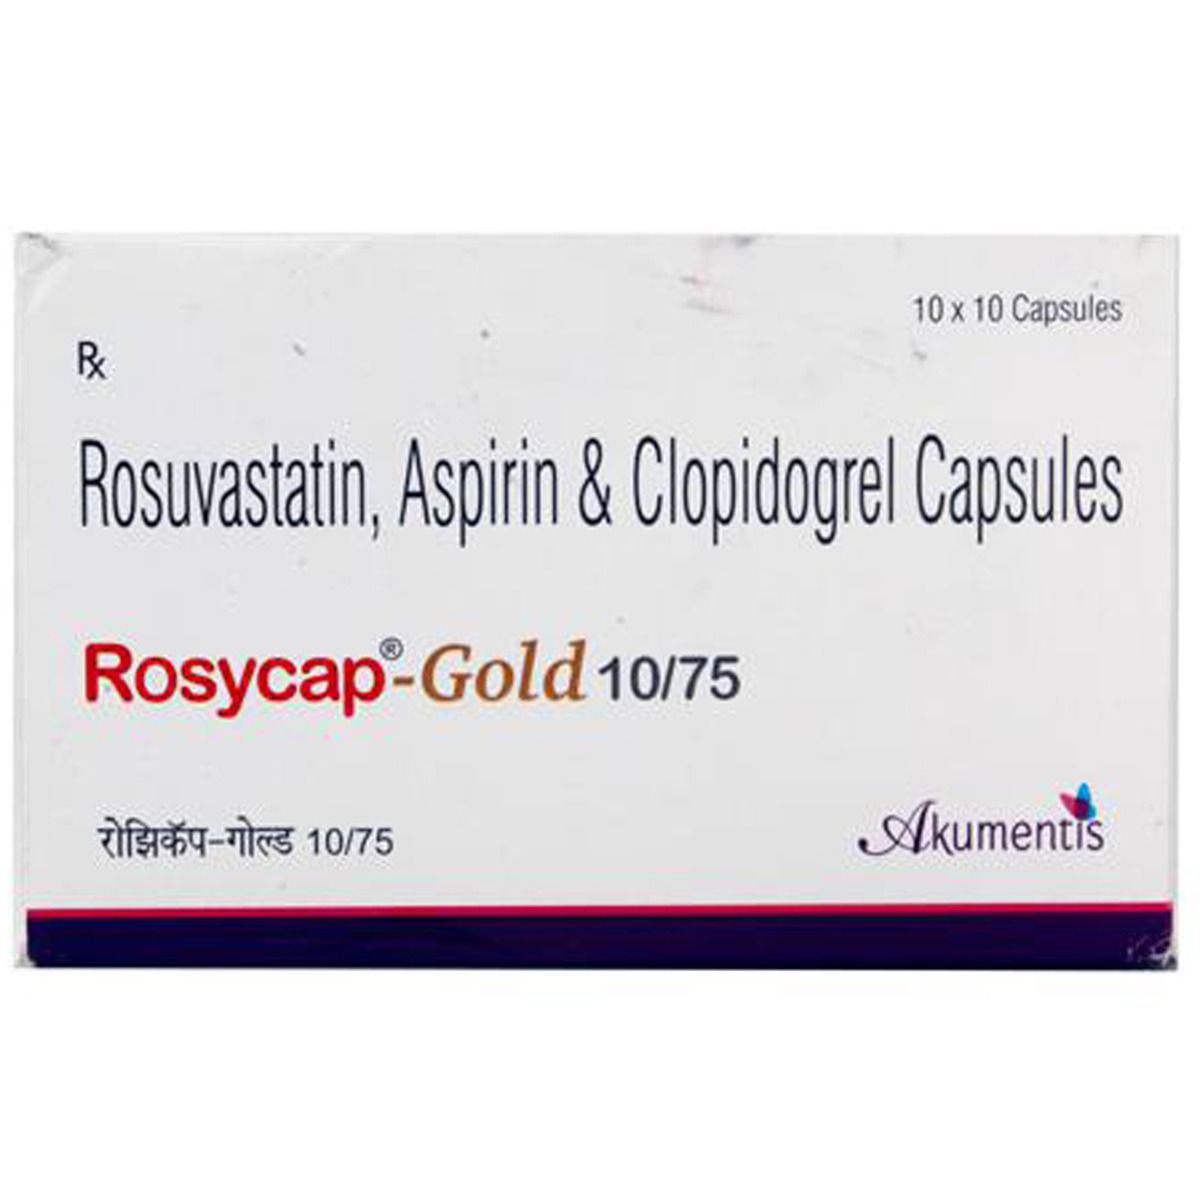 Rosycap-Gold 10/75 Capsule 10's, Pack of 10 CAPSULES